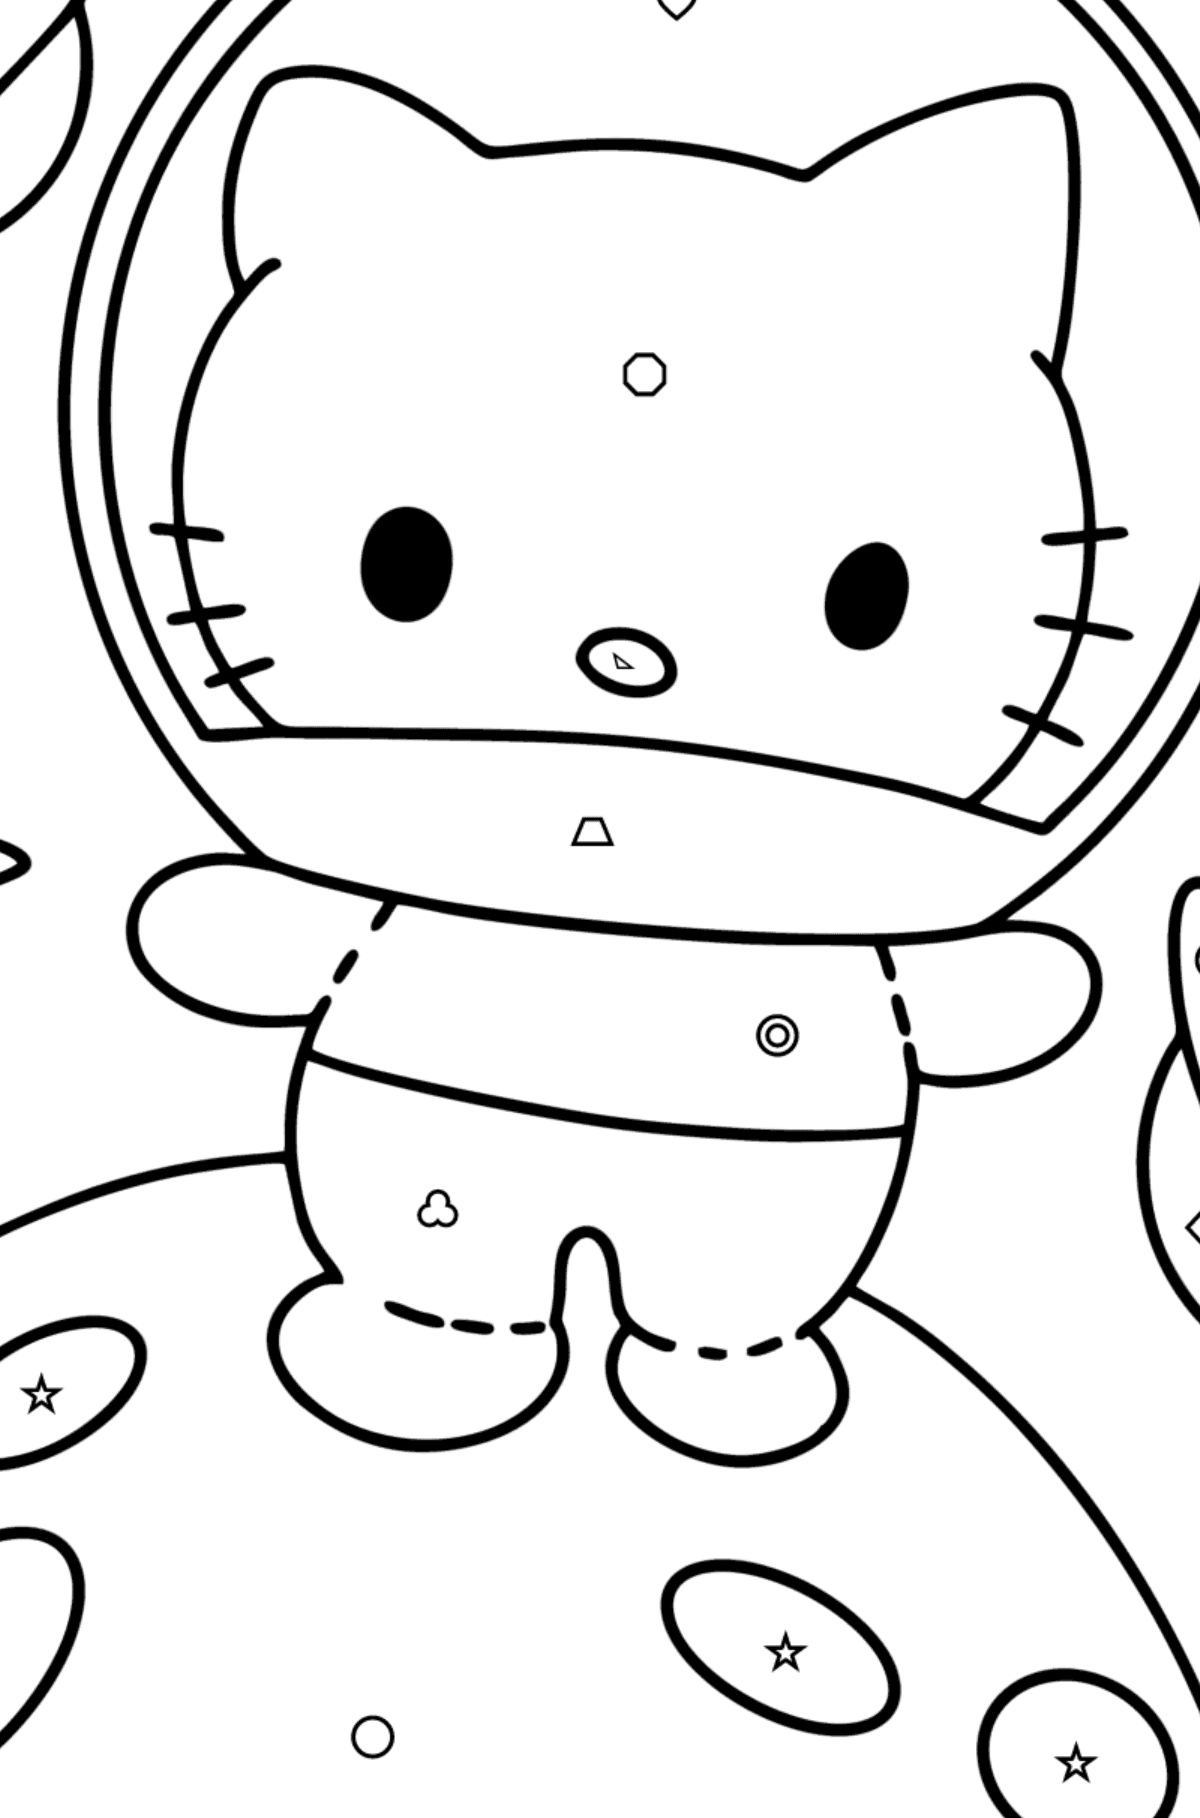 Desenho para colorir Hello Kitty Astronaut - Colorir por Formas Geométricas para Crianças